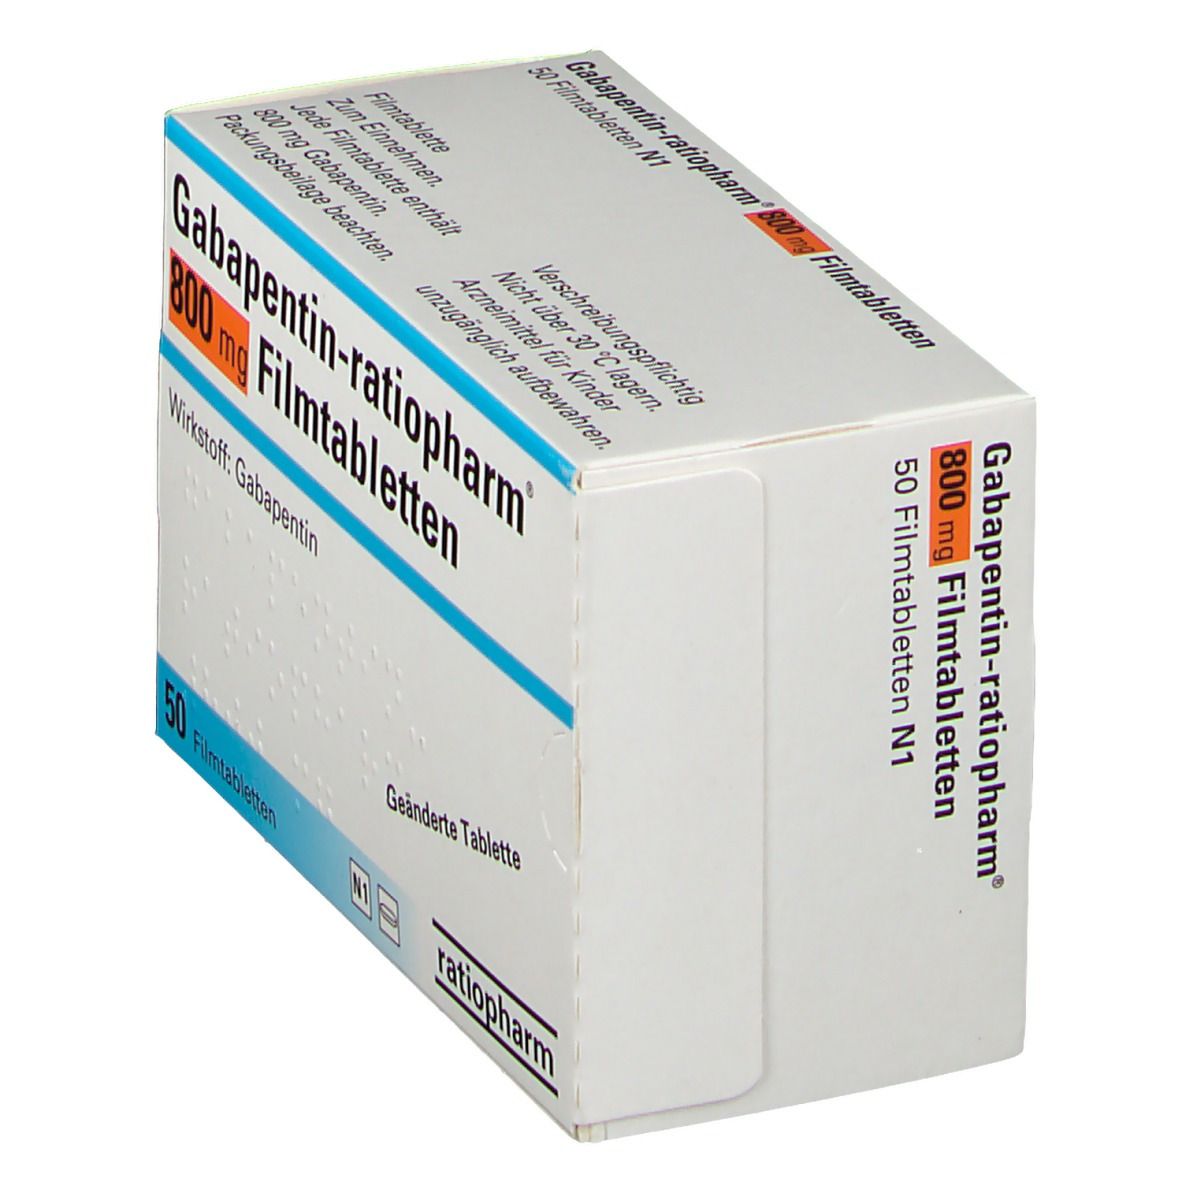 Gabapentin-ratiopharm® 800 mg